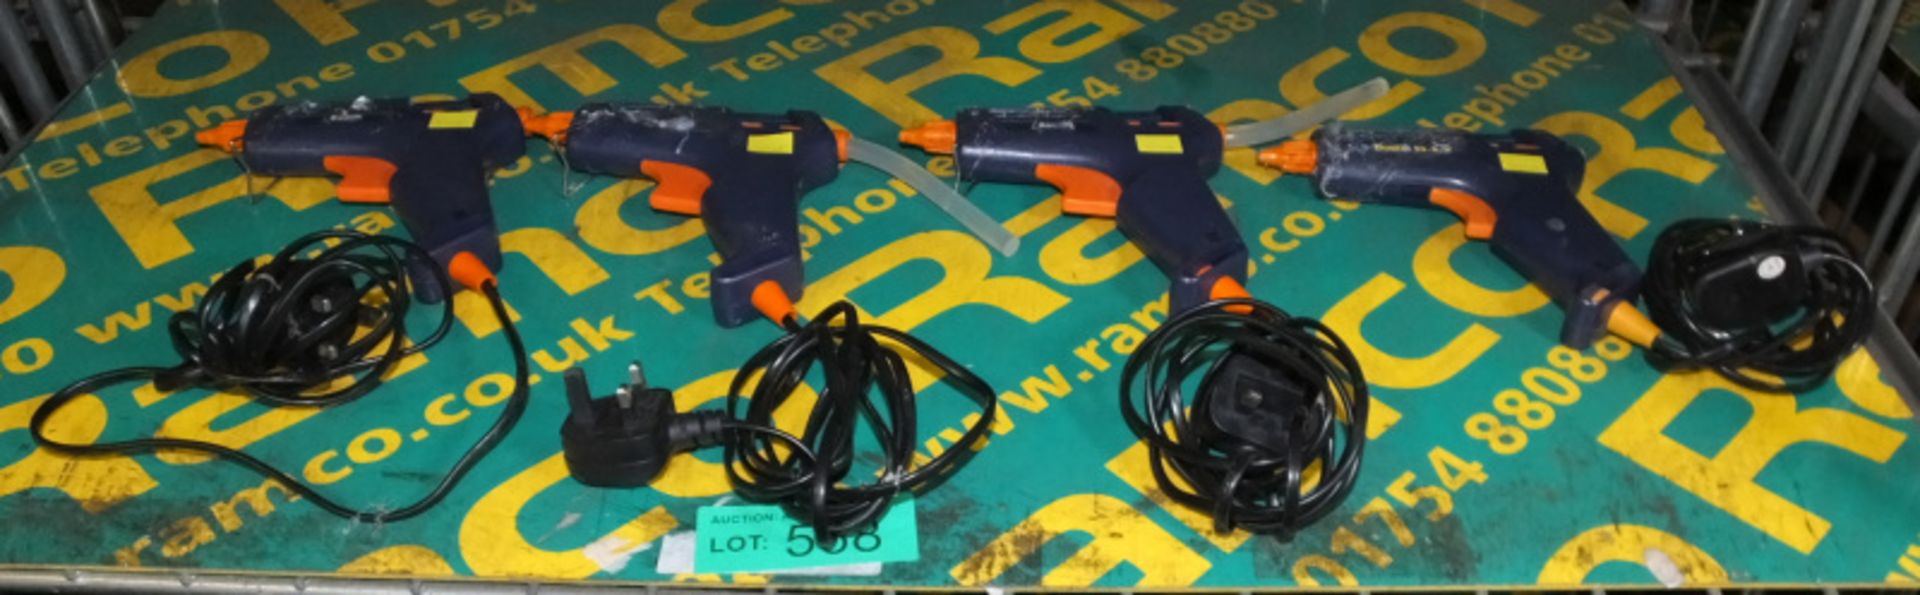 4x Bostik Trigger Action Glue Gun 230V